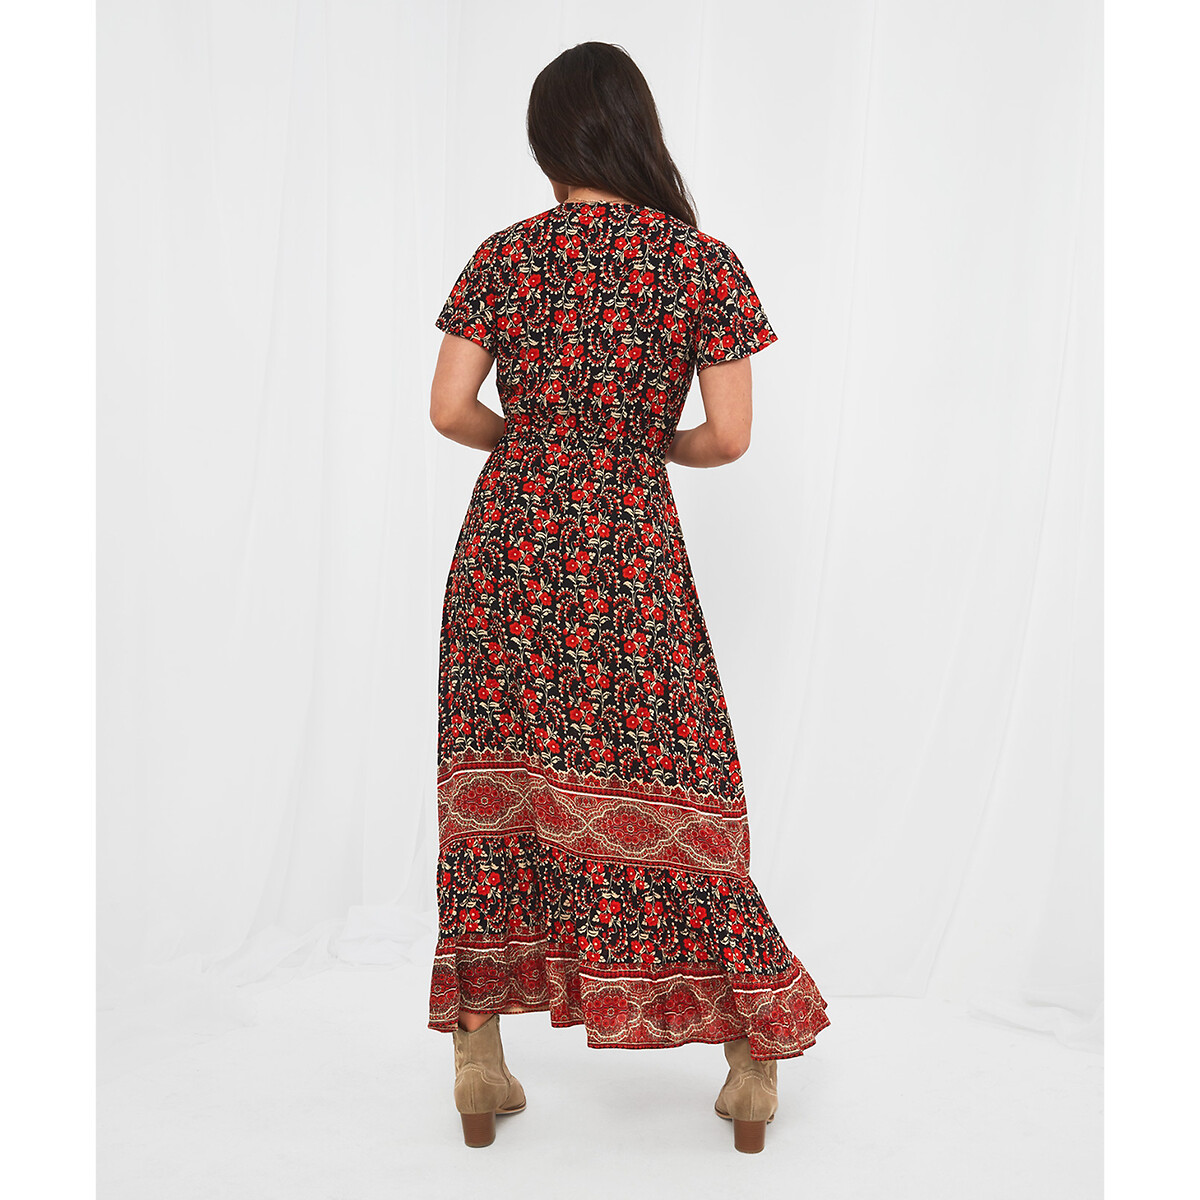 Платье JOE BROWNS Платье Длинное с богемным принтом короткие рукава 42 красный, размер 42 - фото 4